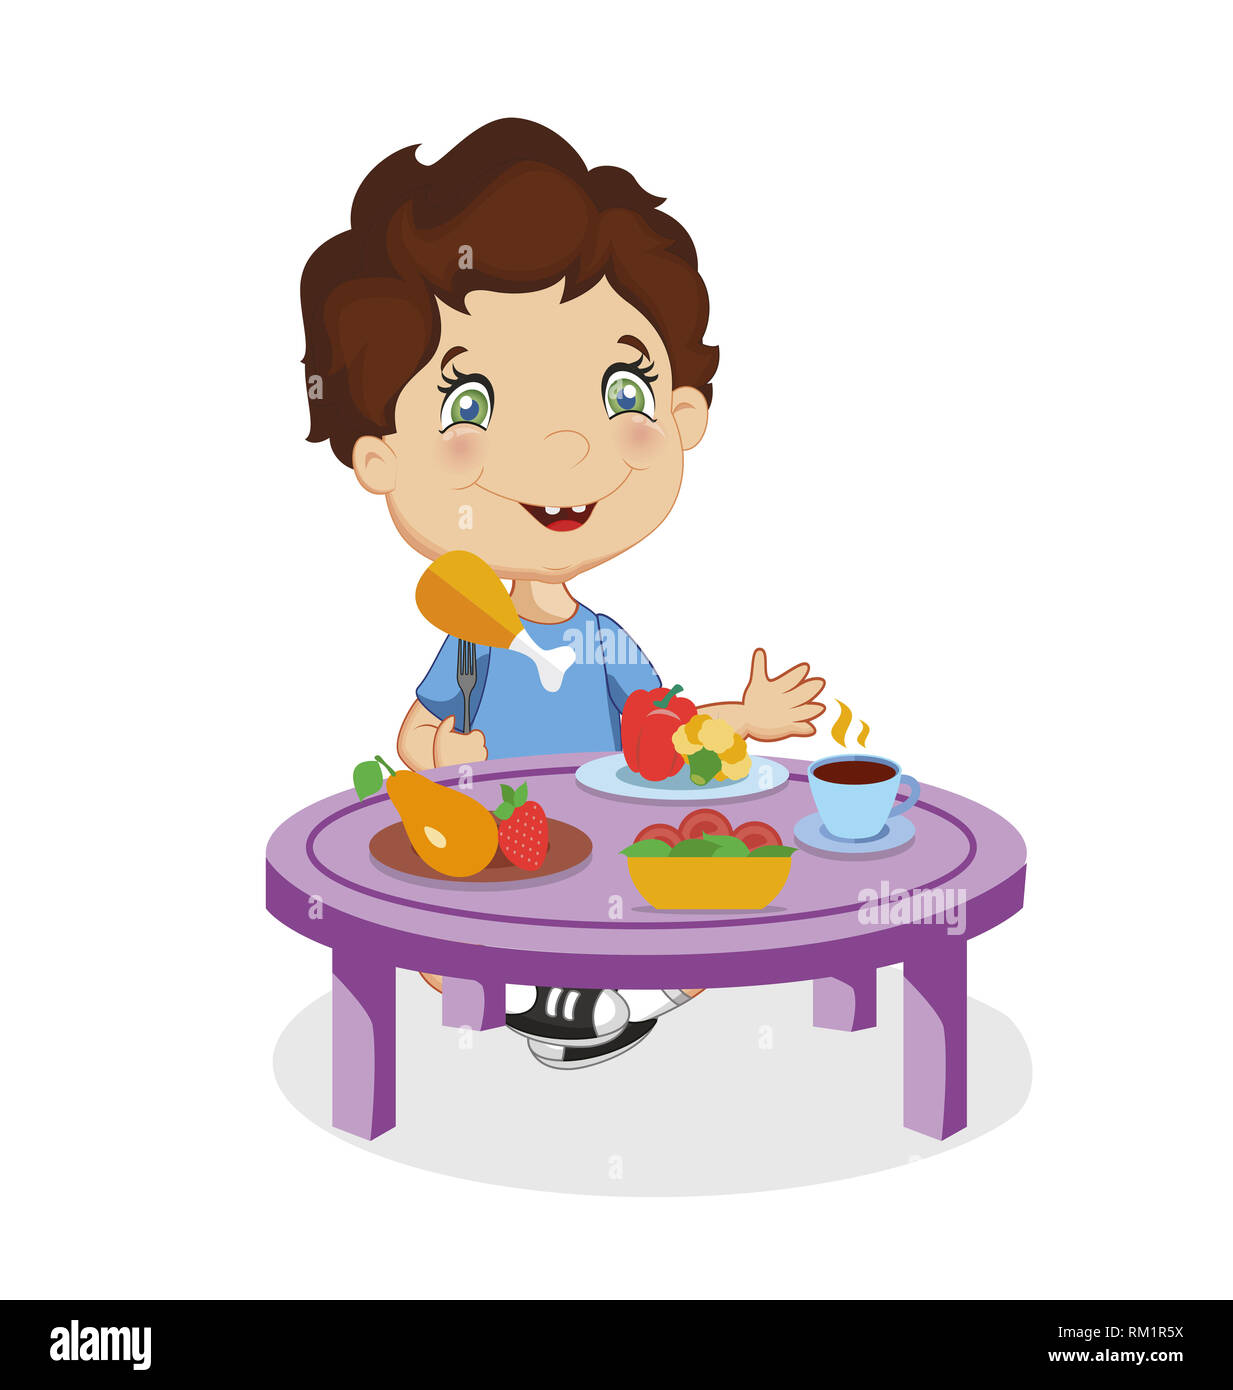 Smiling Funny Cartoon garçon aux cheveux bruns et les yeux bleus Chiken manger assis à table avec différents aliments comme les fruits, légumes isolated on White Backg Banque D'Images